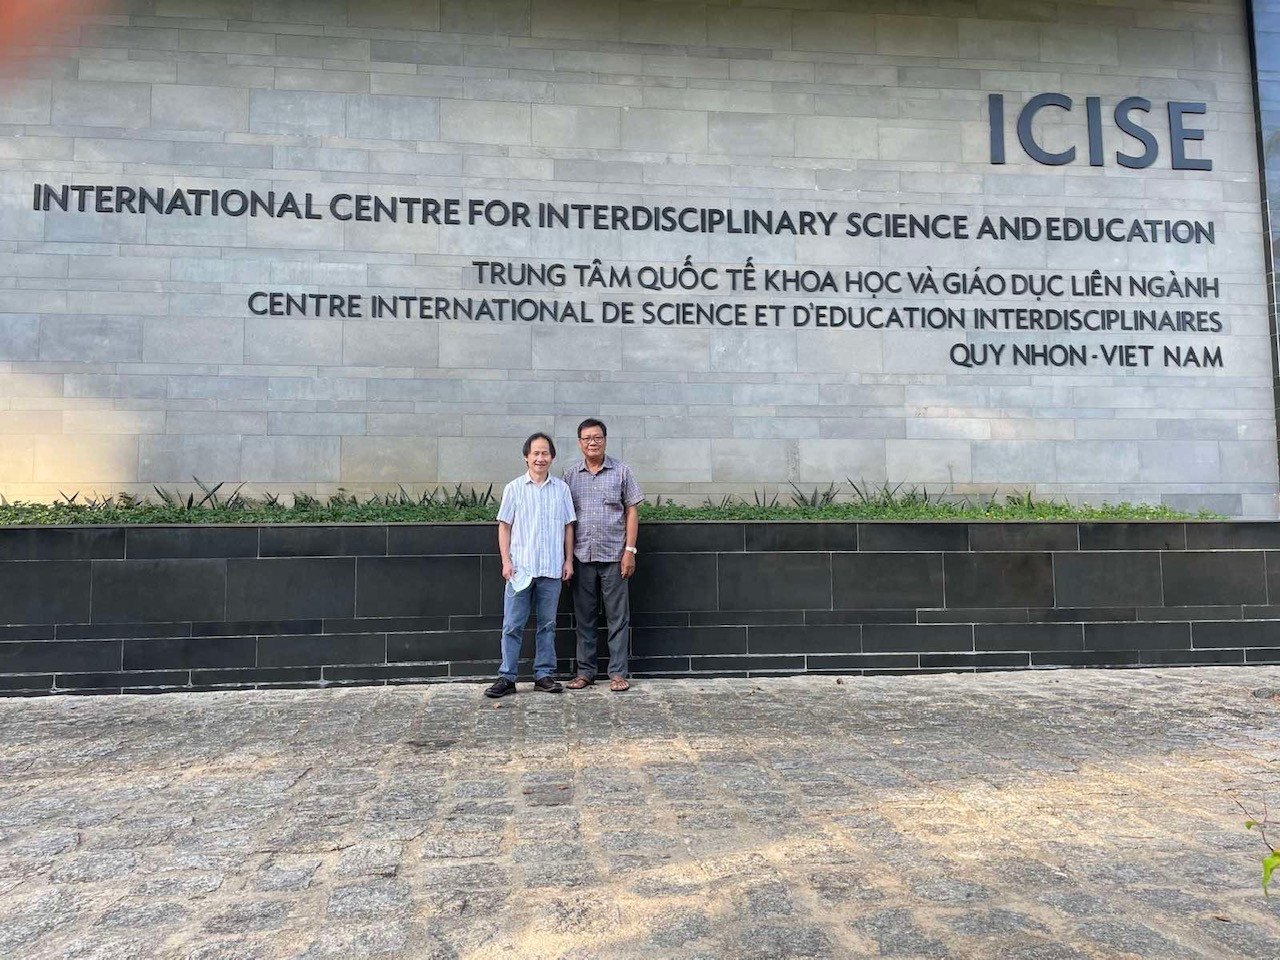 Nhà khoa học gốc Việt ở NASA Nguyễn Trọng Hiền nói về hợp tác nghiên cứu thiên văn quốc tế với Việt Nam - ảnh 1